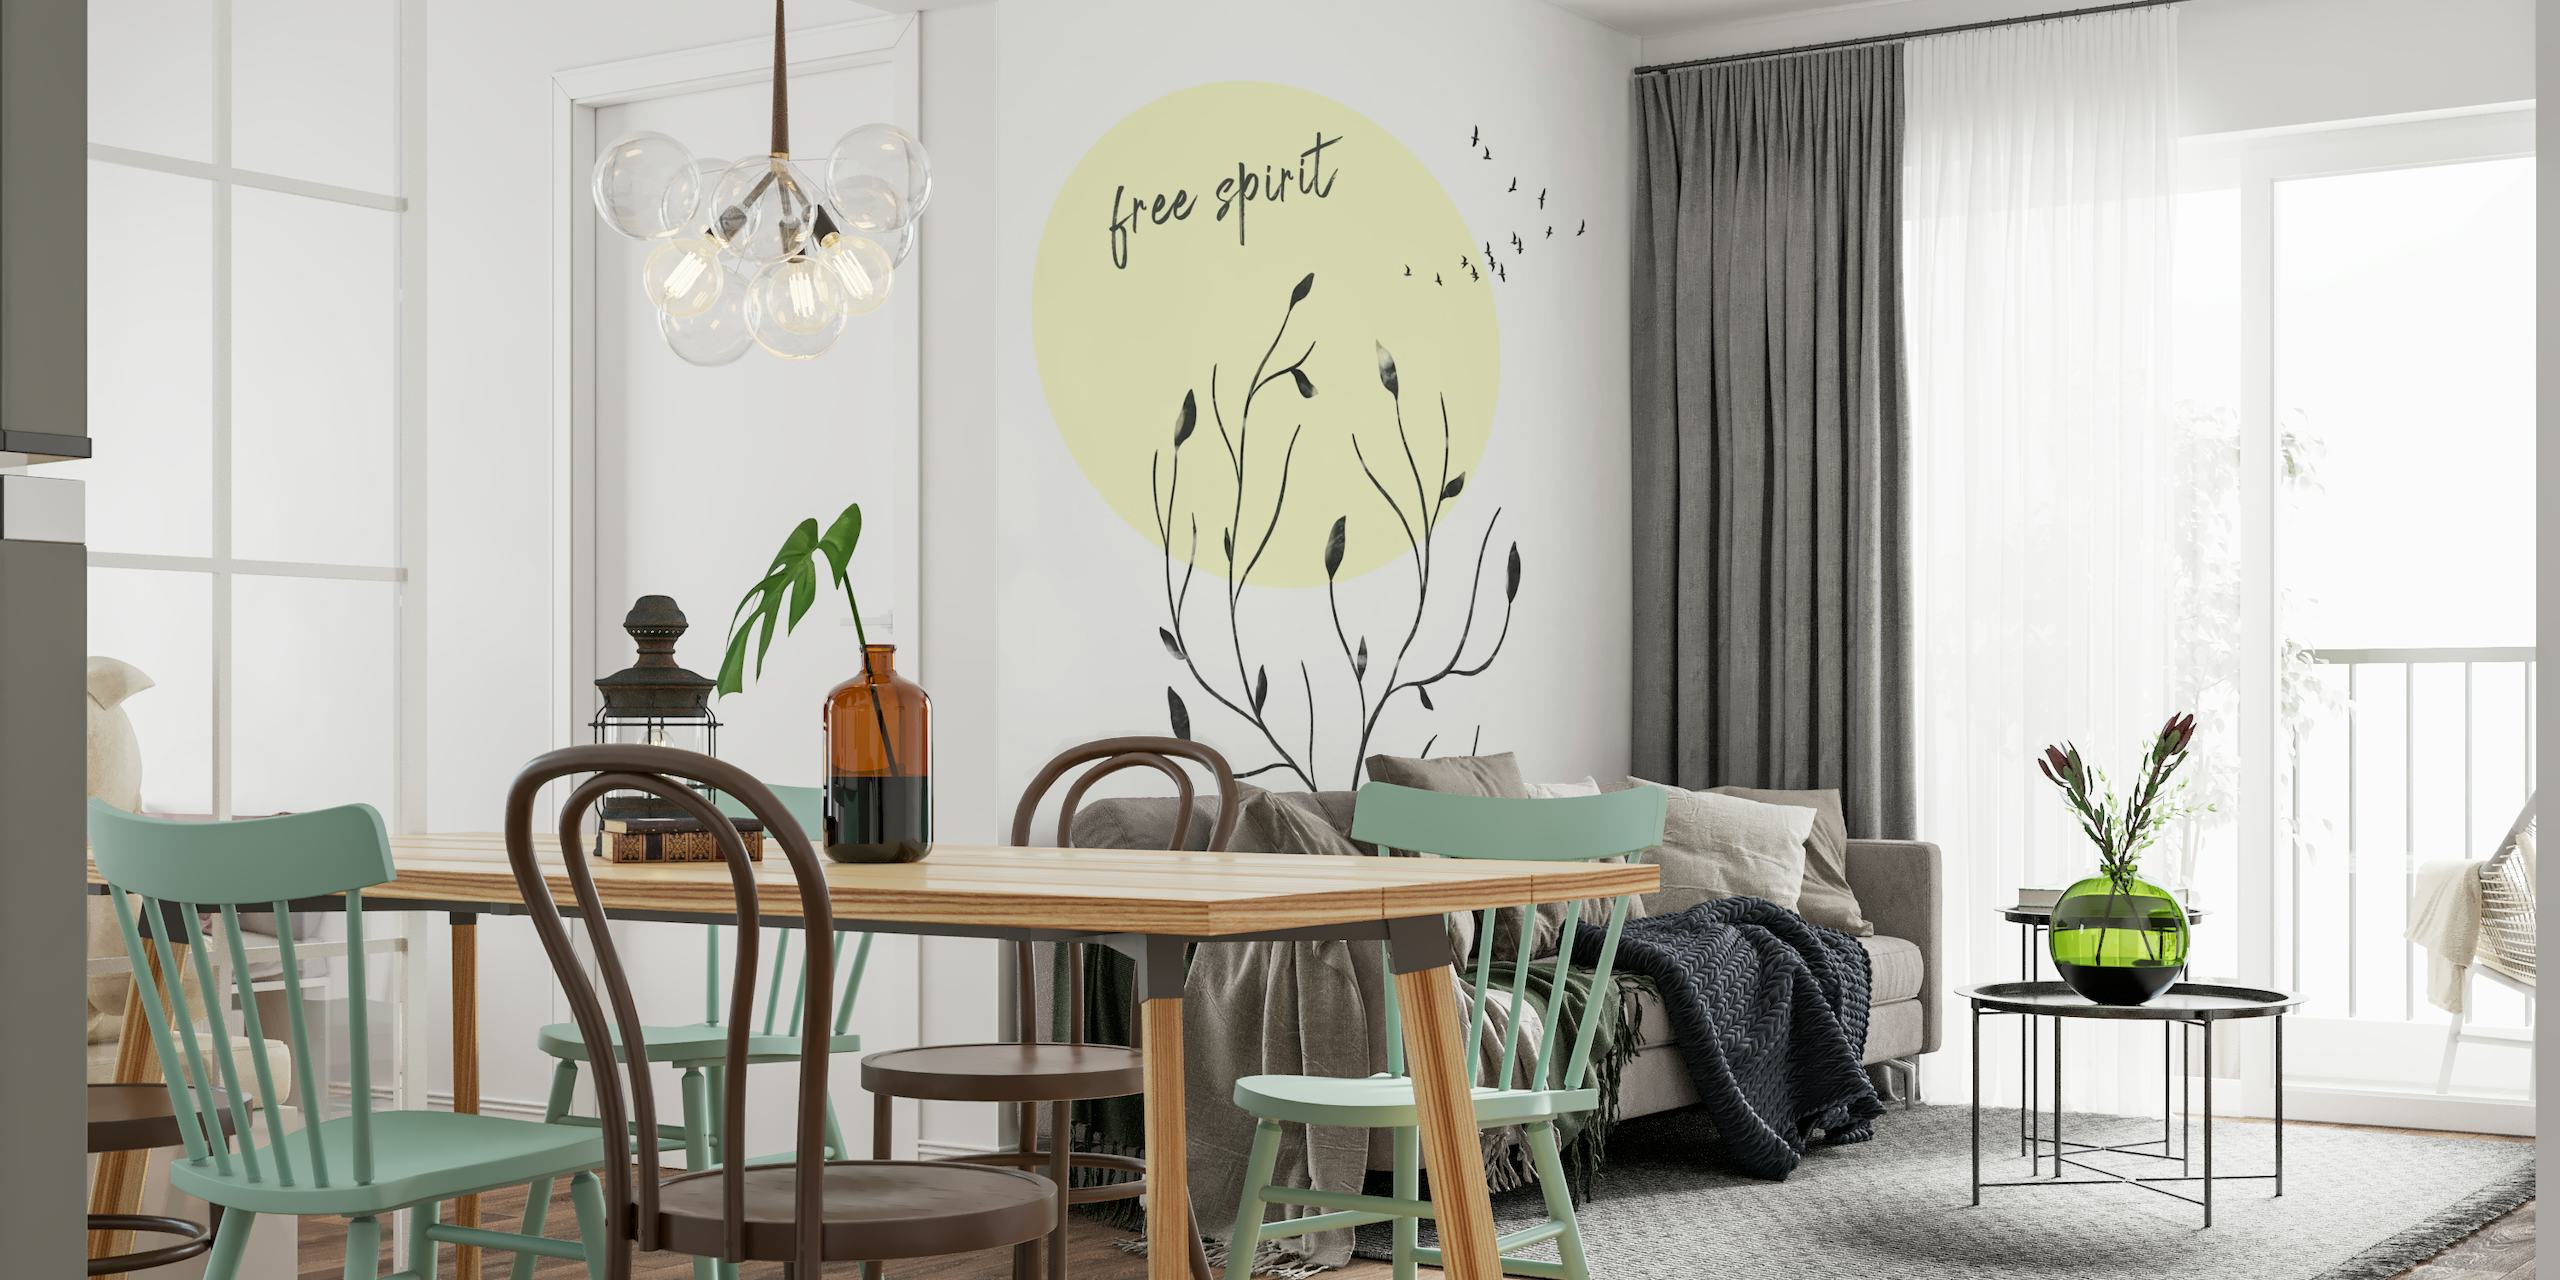 Mural de parede minimalista 'Free Spirit' com silhuetas botânicas e texto, em creme e preto com um círculo amarelo